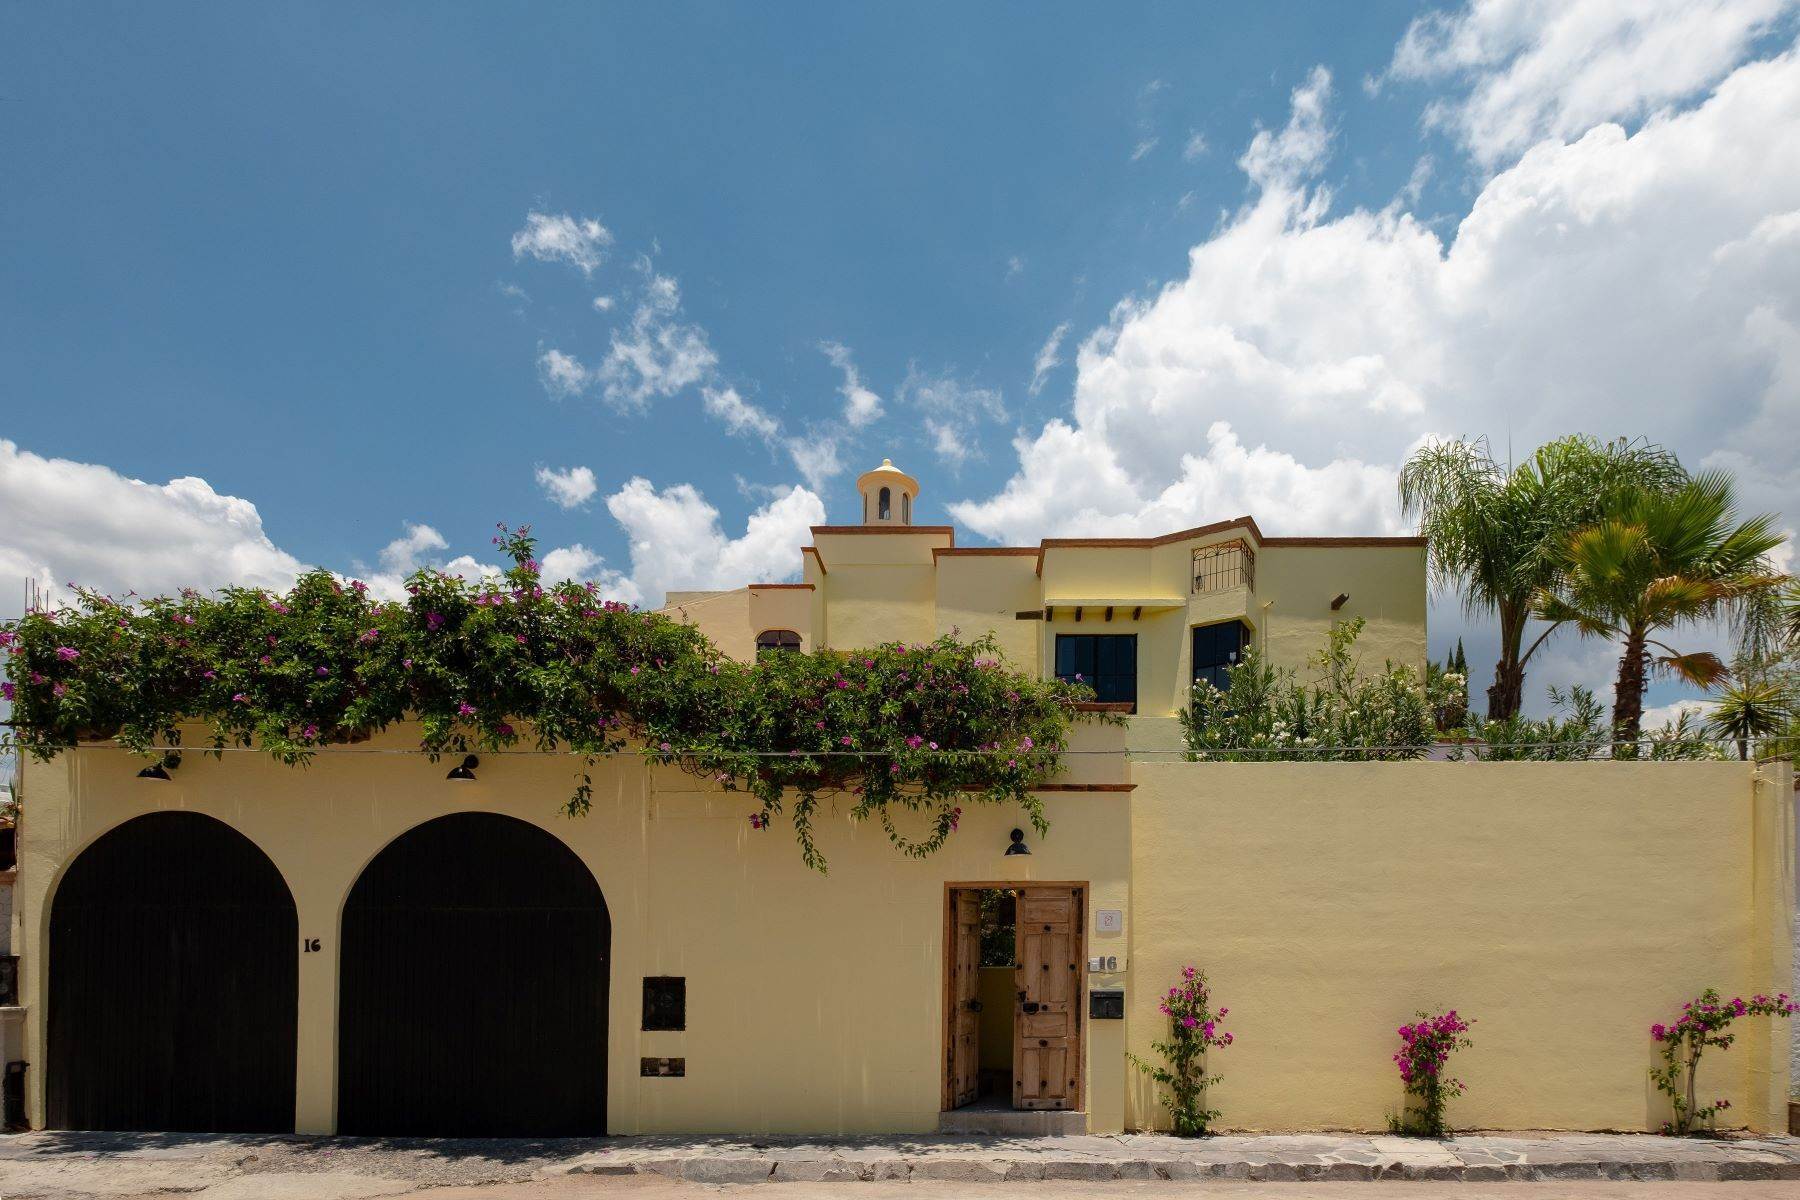 Property for Sale at Casa Bandido Gallos 16, Los Frailes San Miguel De Allende, Guanajuato 37790 Mexico